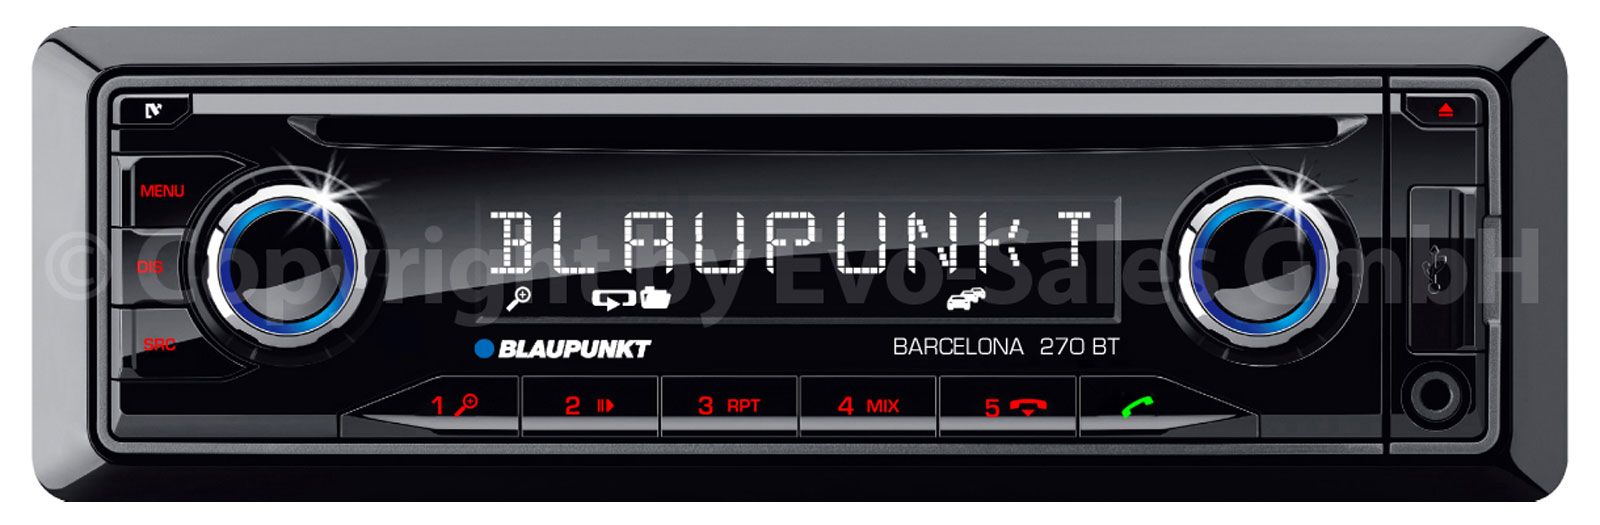 Blaupunkt Barcelona 270 BT - CD/MP3-Autoradio mit Bluetooth / USB / SD / iPod / AUX-IN